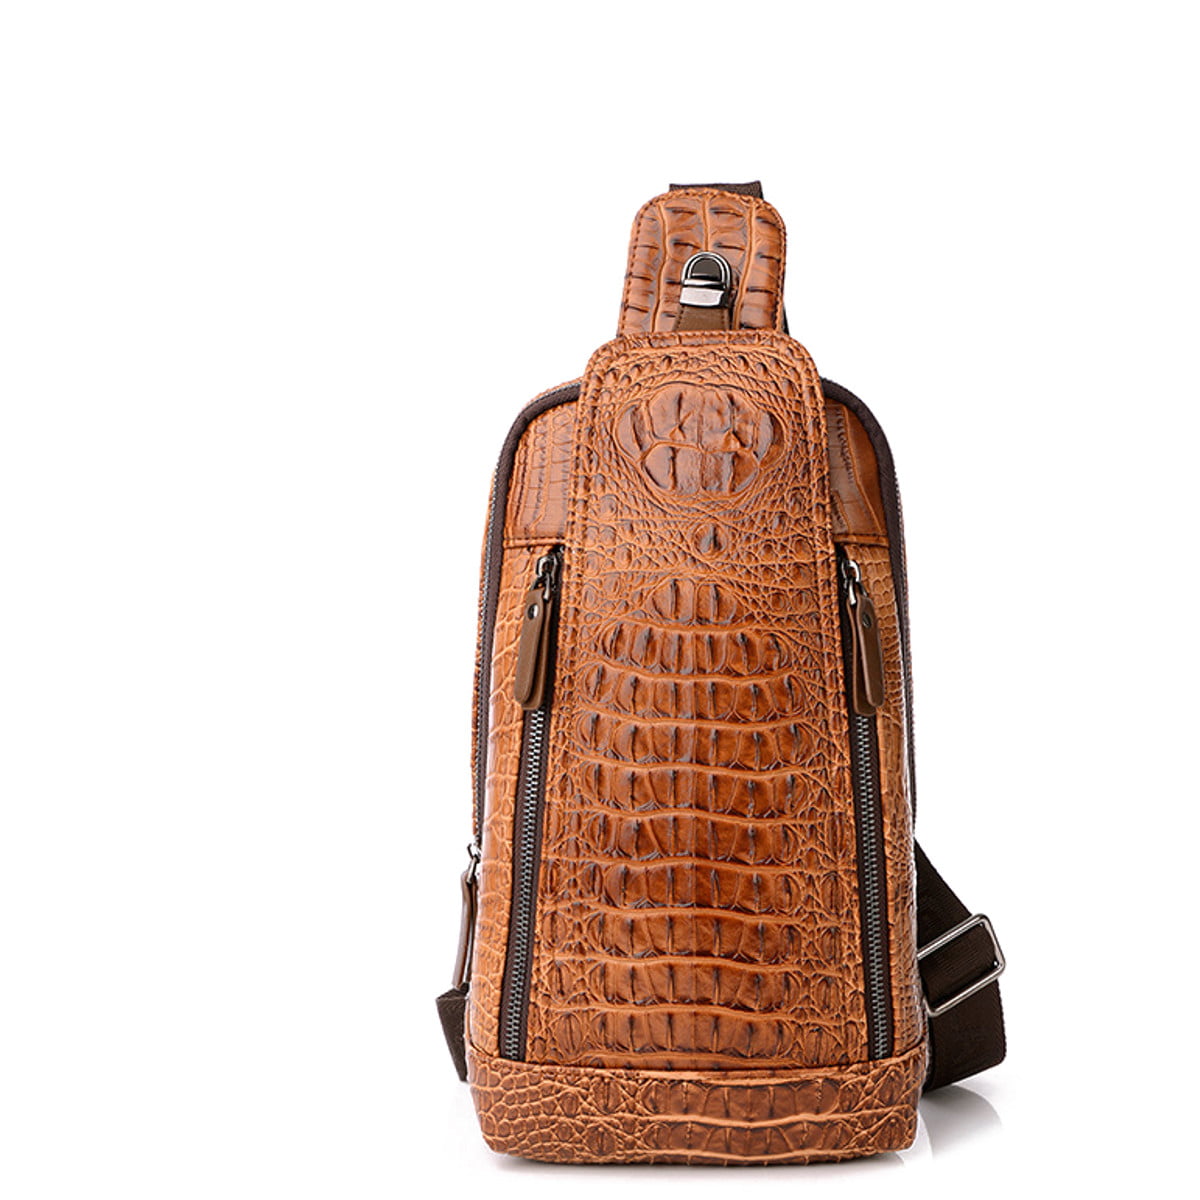 KUDOSALE - Men Sling Bag Messenger ,Leather Crocodile Pattern Cross Chest Shoulder Bag Body ...